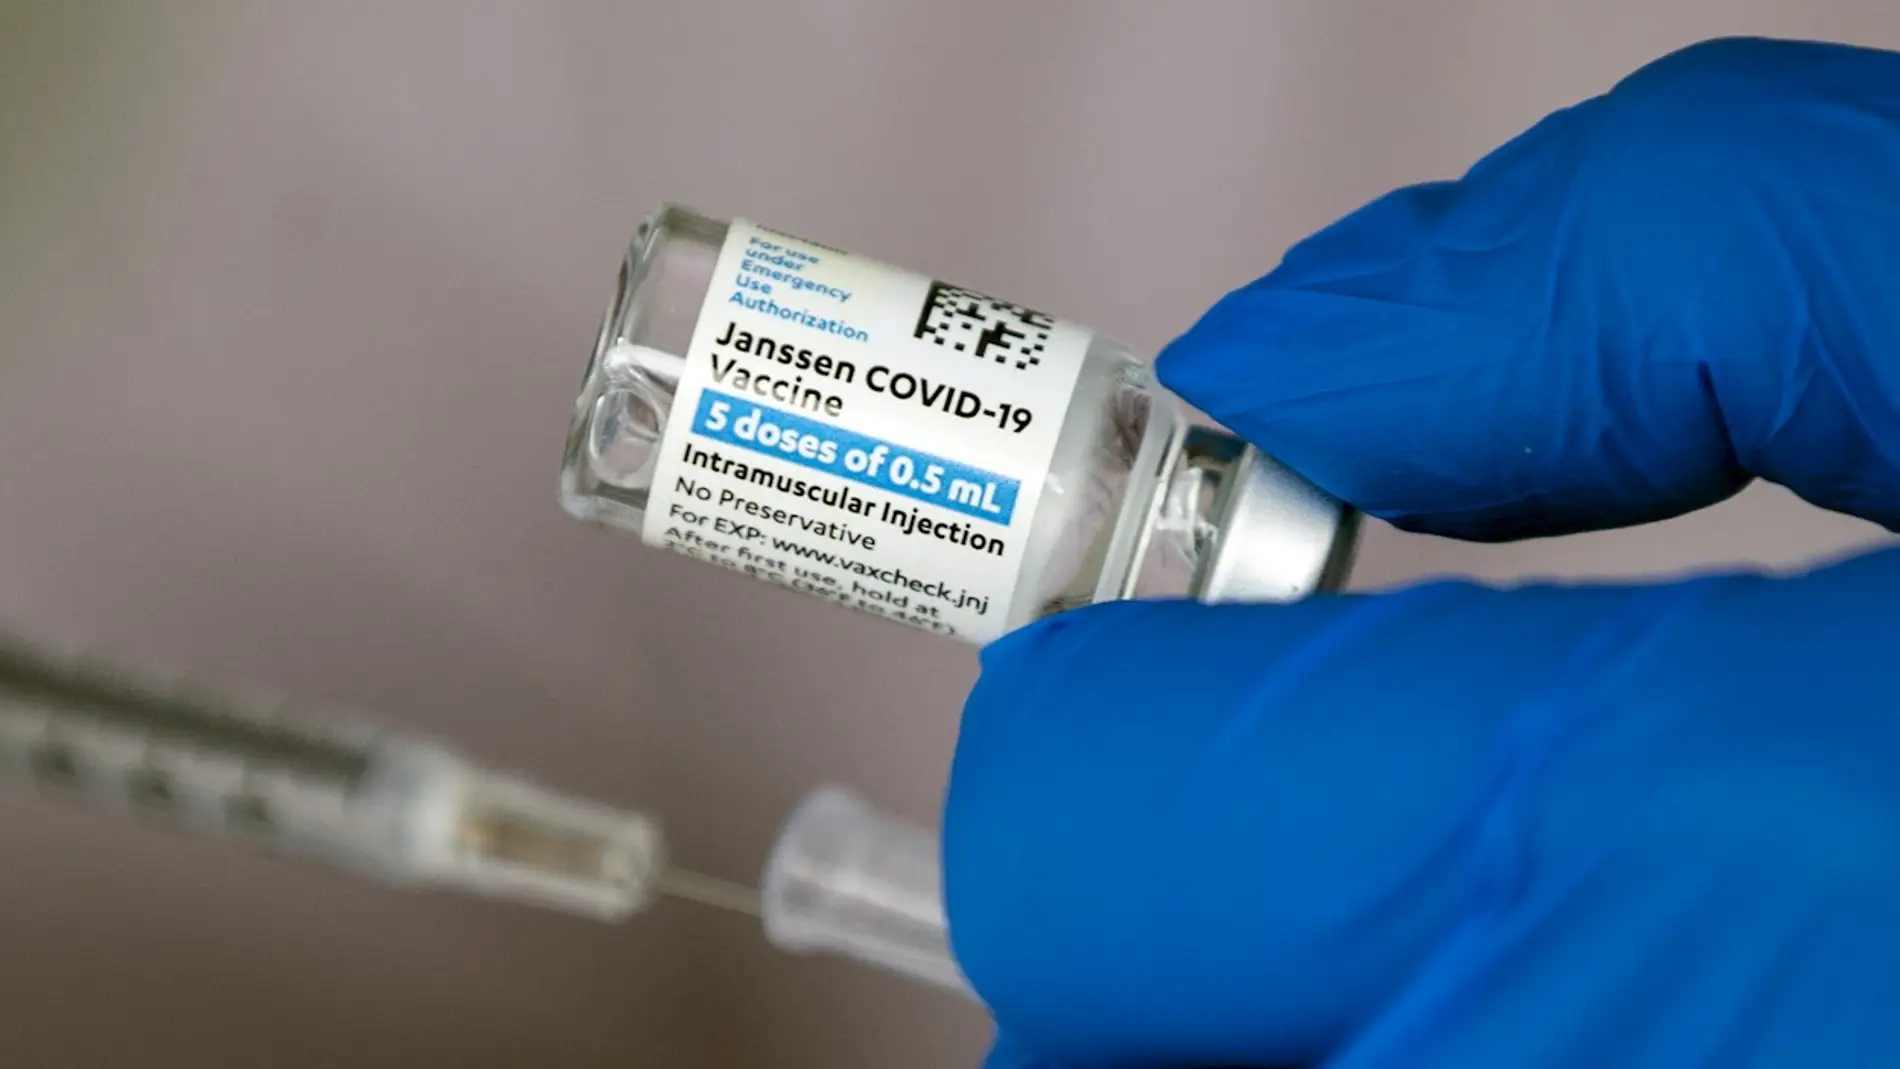 A3 Noticias de la mañana (14-04-21) ¿Cómo afecta el retraso con la vacuna de Janssen al calendario de vacunación? Hoy Gobierno y comunidades lo analizan